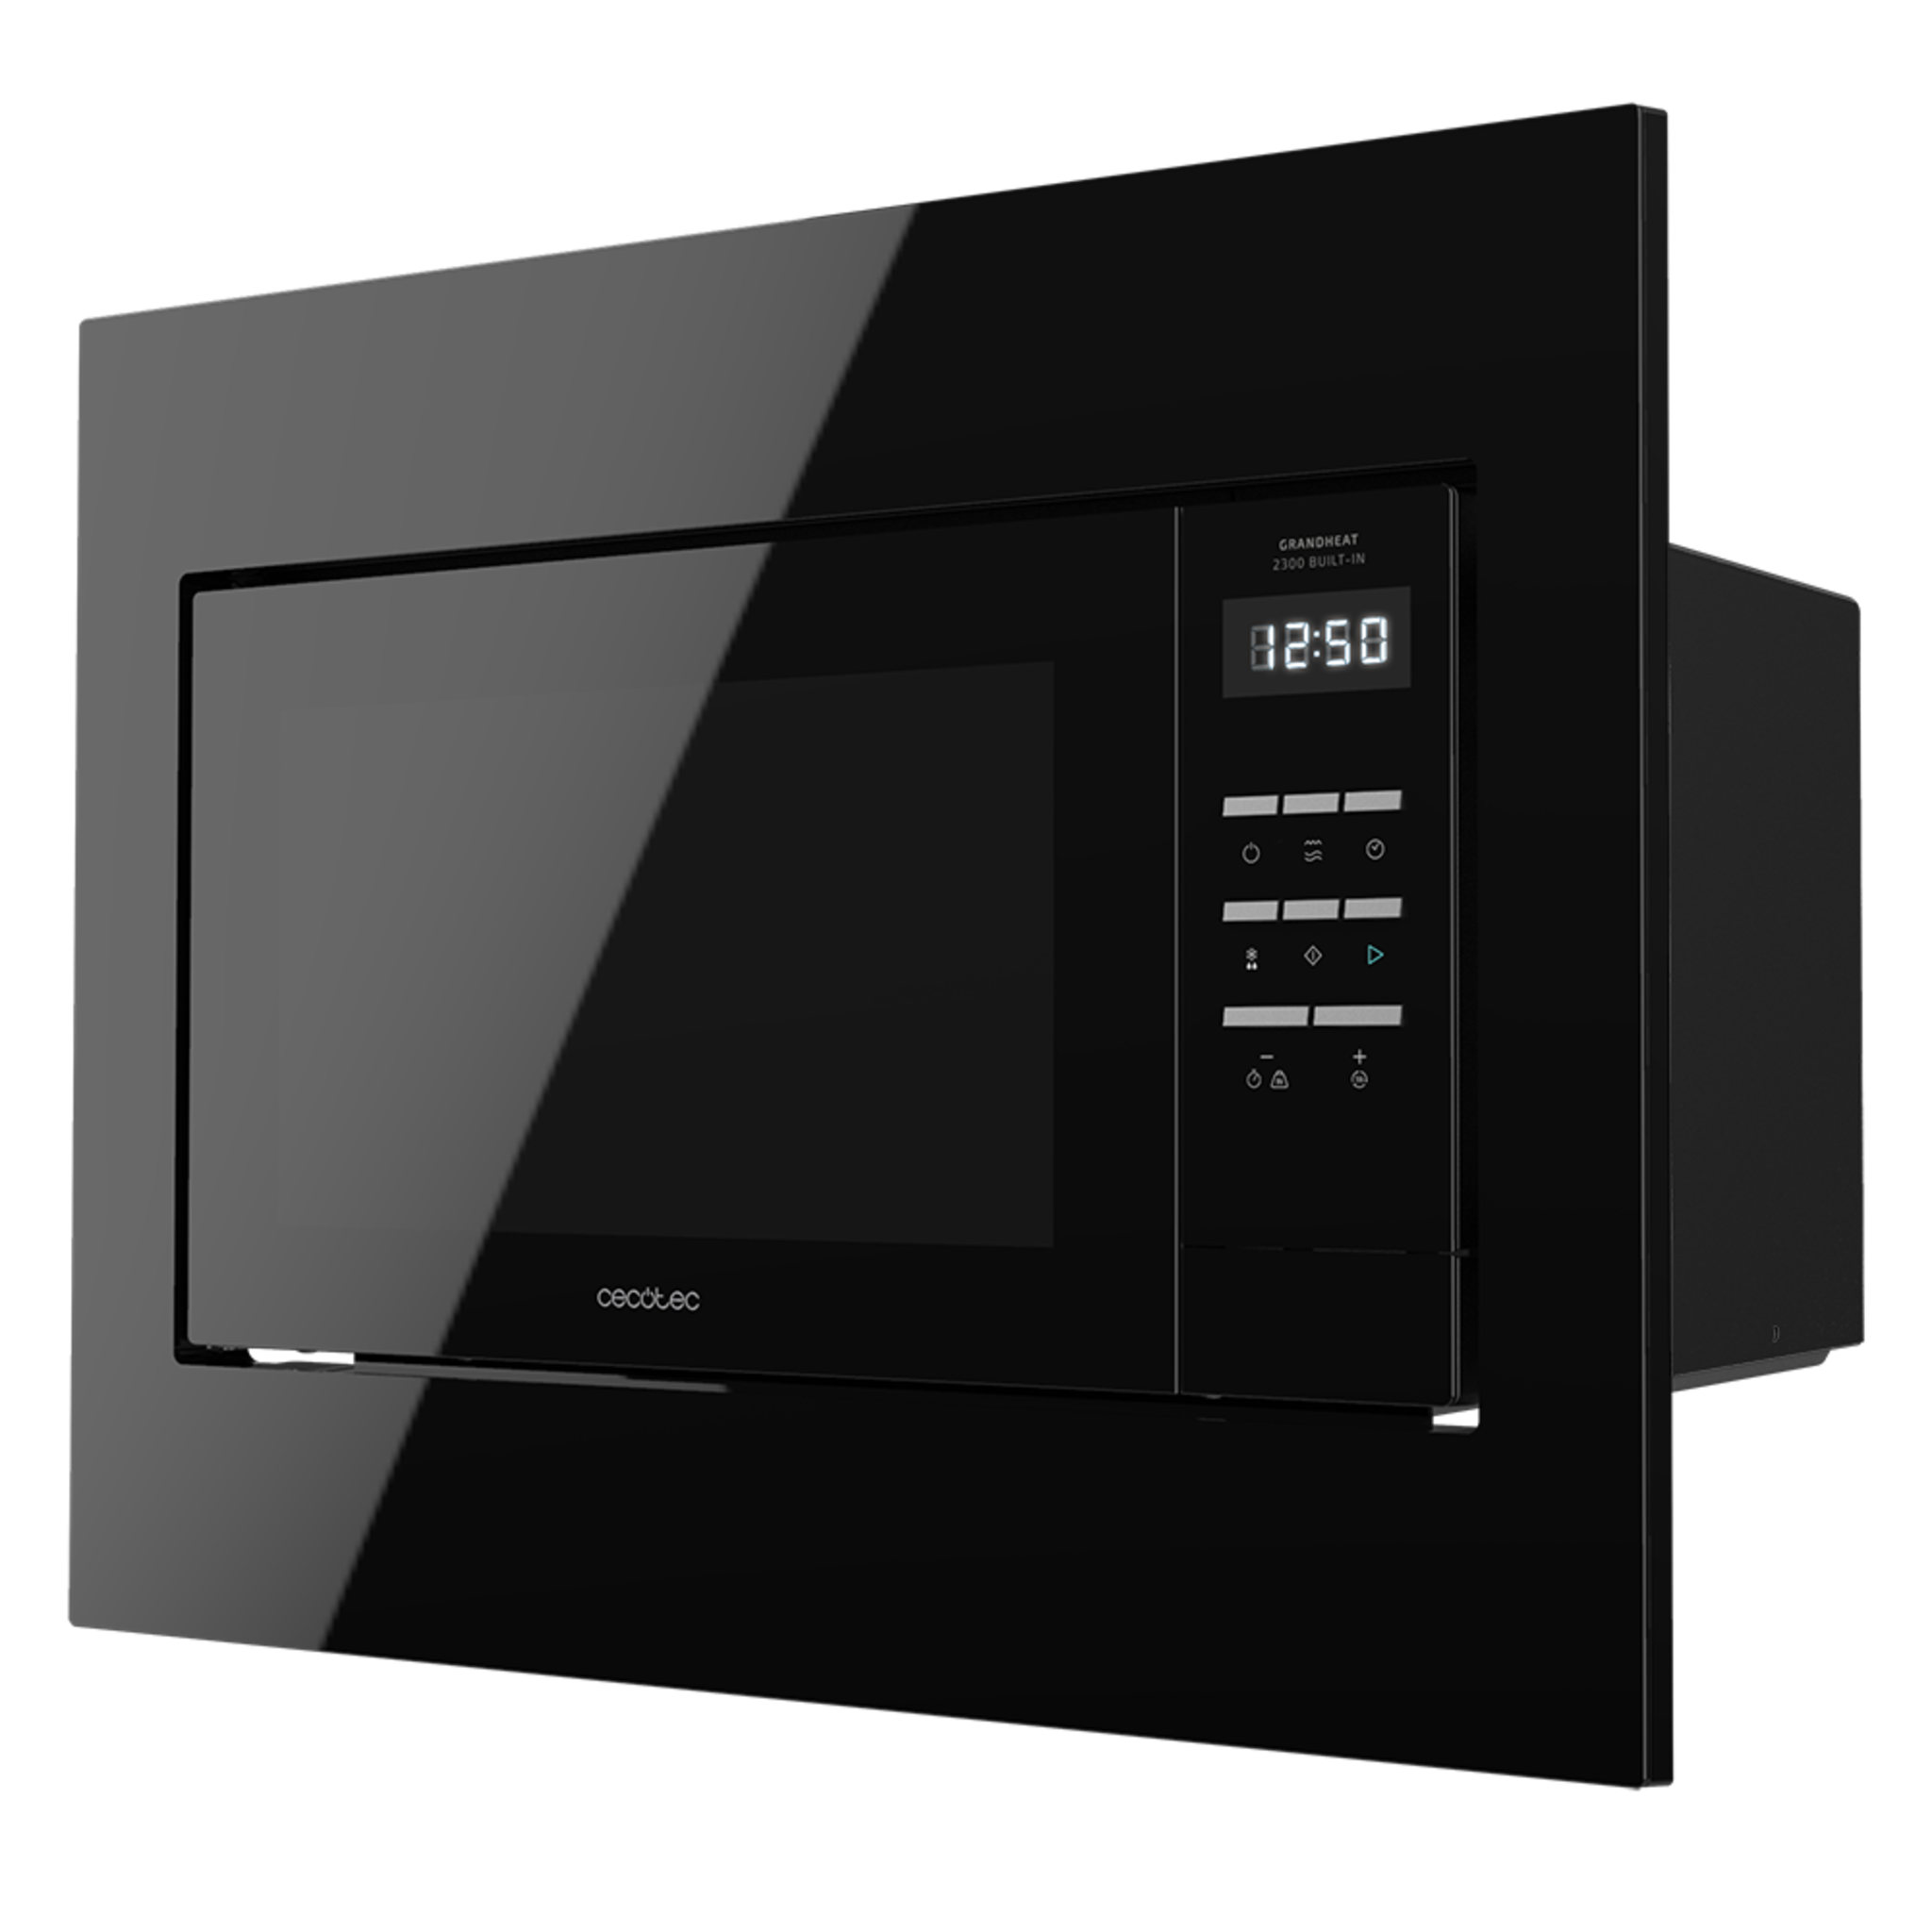 Micro-ondes numérique encastrable GrandHeat 2300 Built-In Black. 800 W de puissance, 23 litres de capacité, gril, 5 niveaux, 8 fonctions préconfigurées et minuterie.